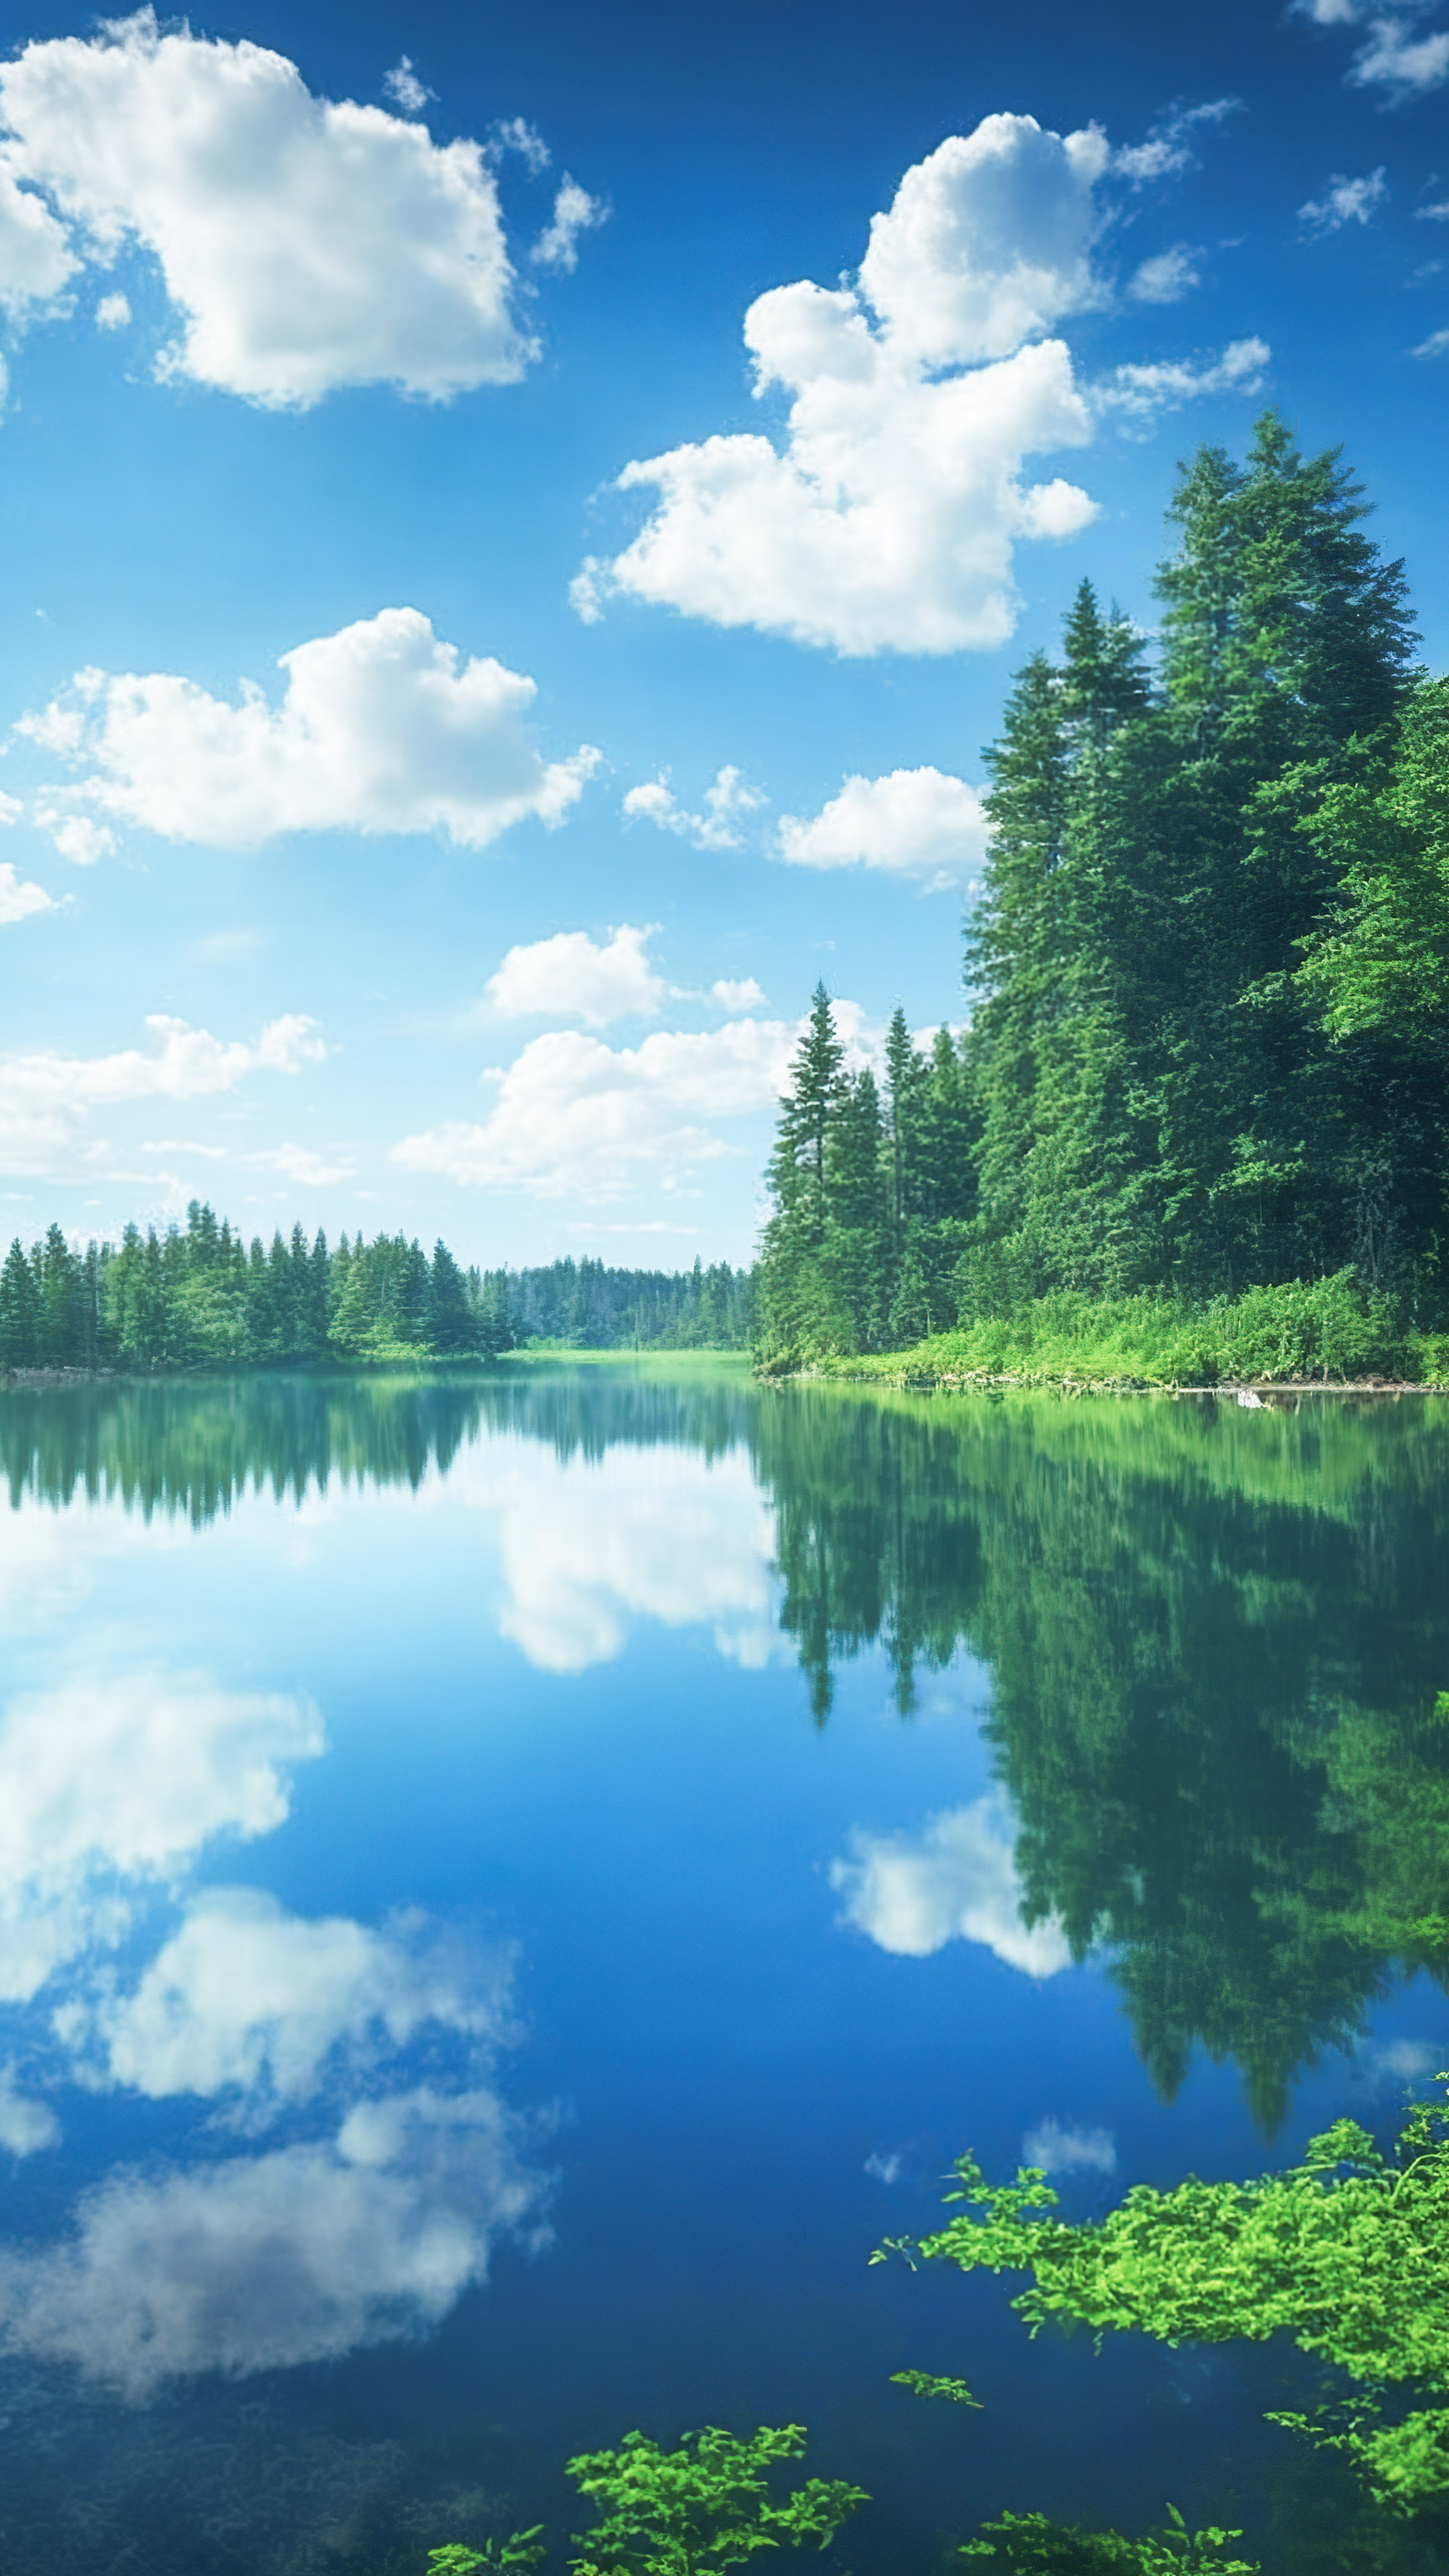 Apportez la beauté de la nature à votre appareil avec notre fond d'écran naturel de ciel et d'herbe, présentant un lac serein reflétant un ciel parsemé de nuages, entouré de forêts verdoyantes.